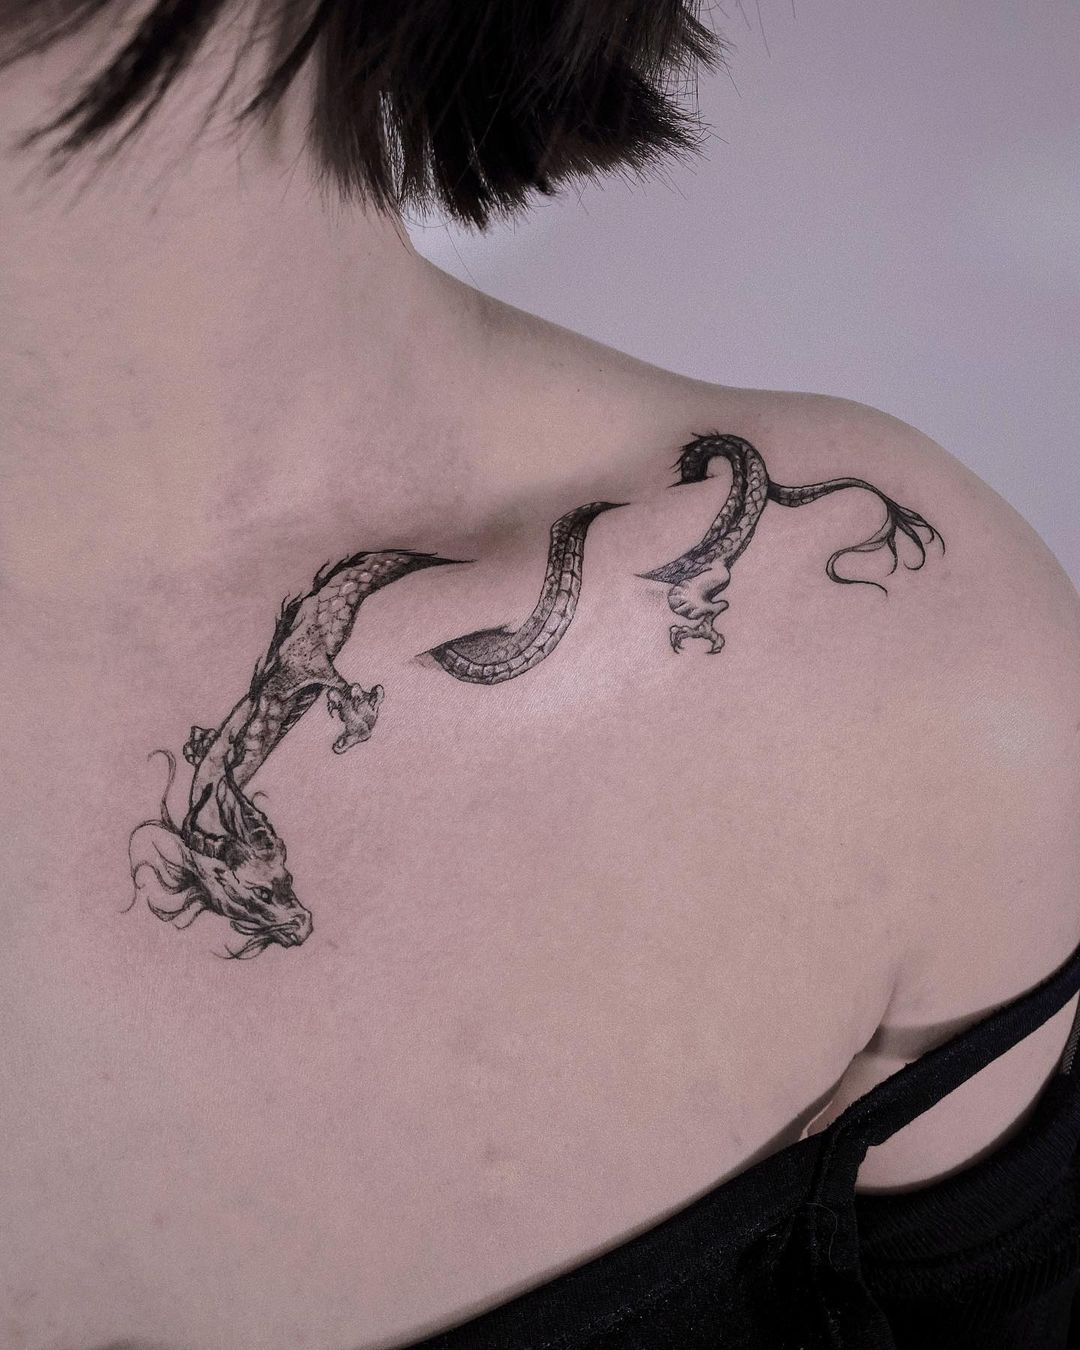 Collar bone snake tattoo  Boas ideias para tatuagem Tatuagens criativas  Tatuagem no pescoço